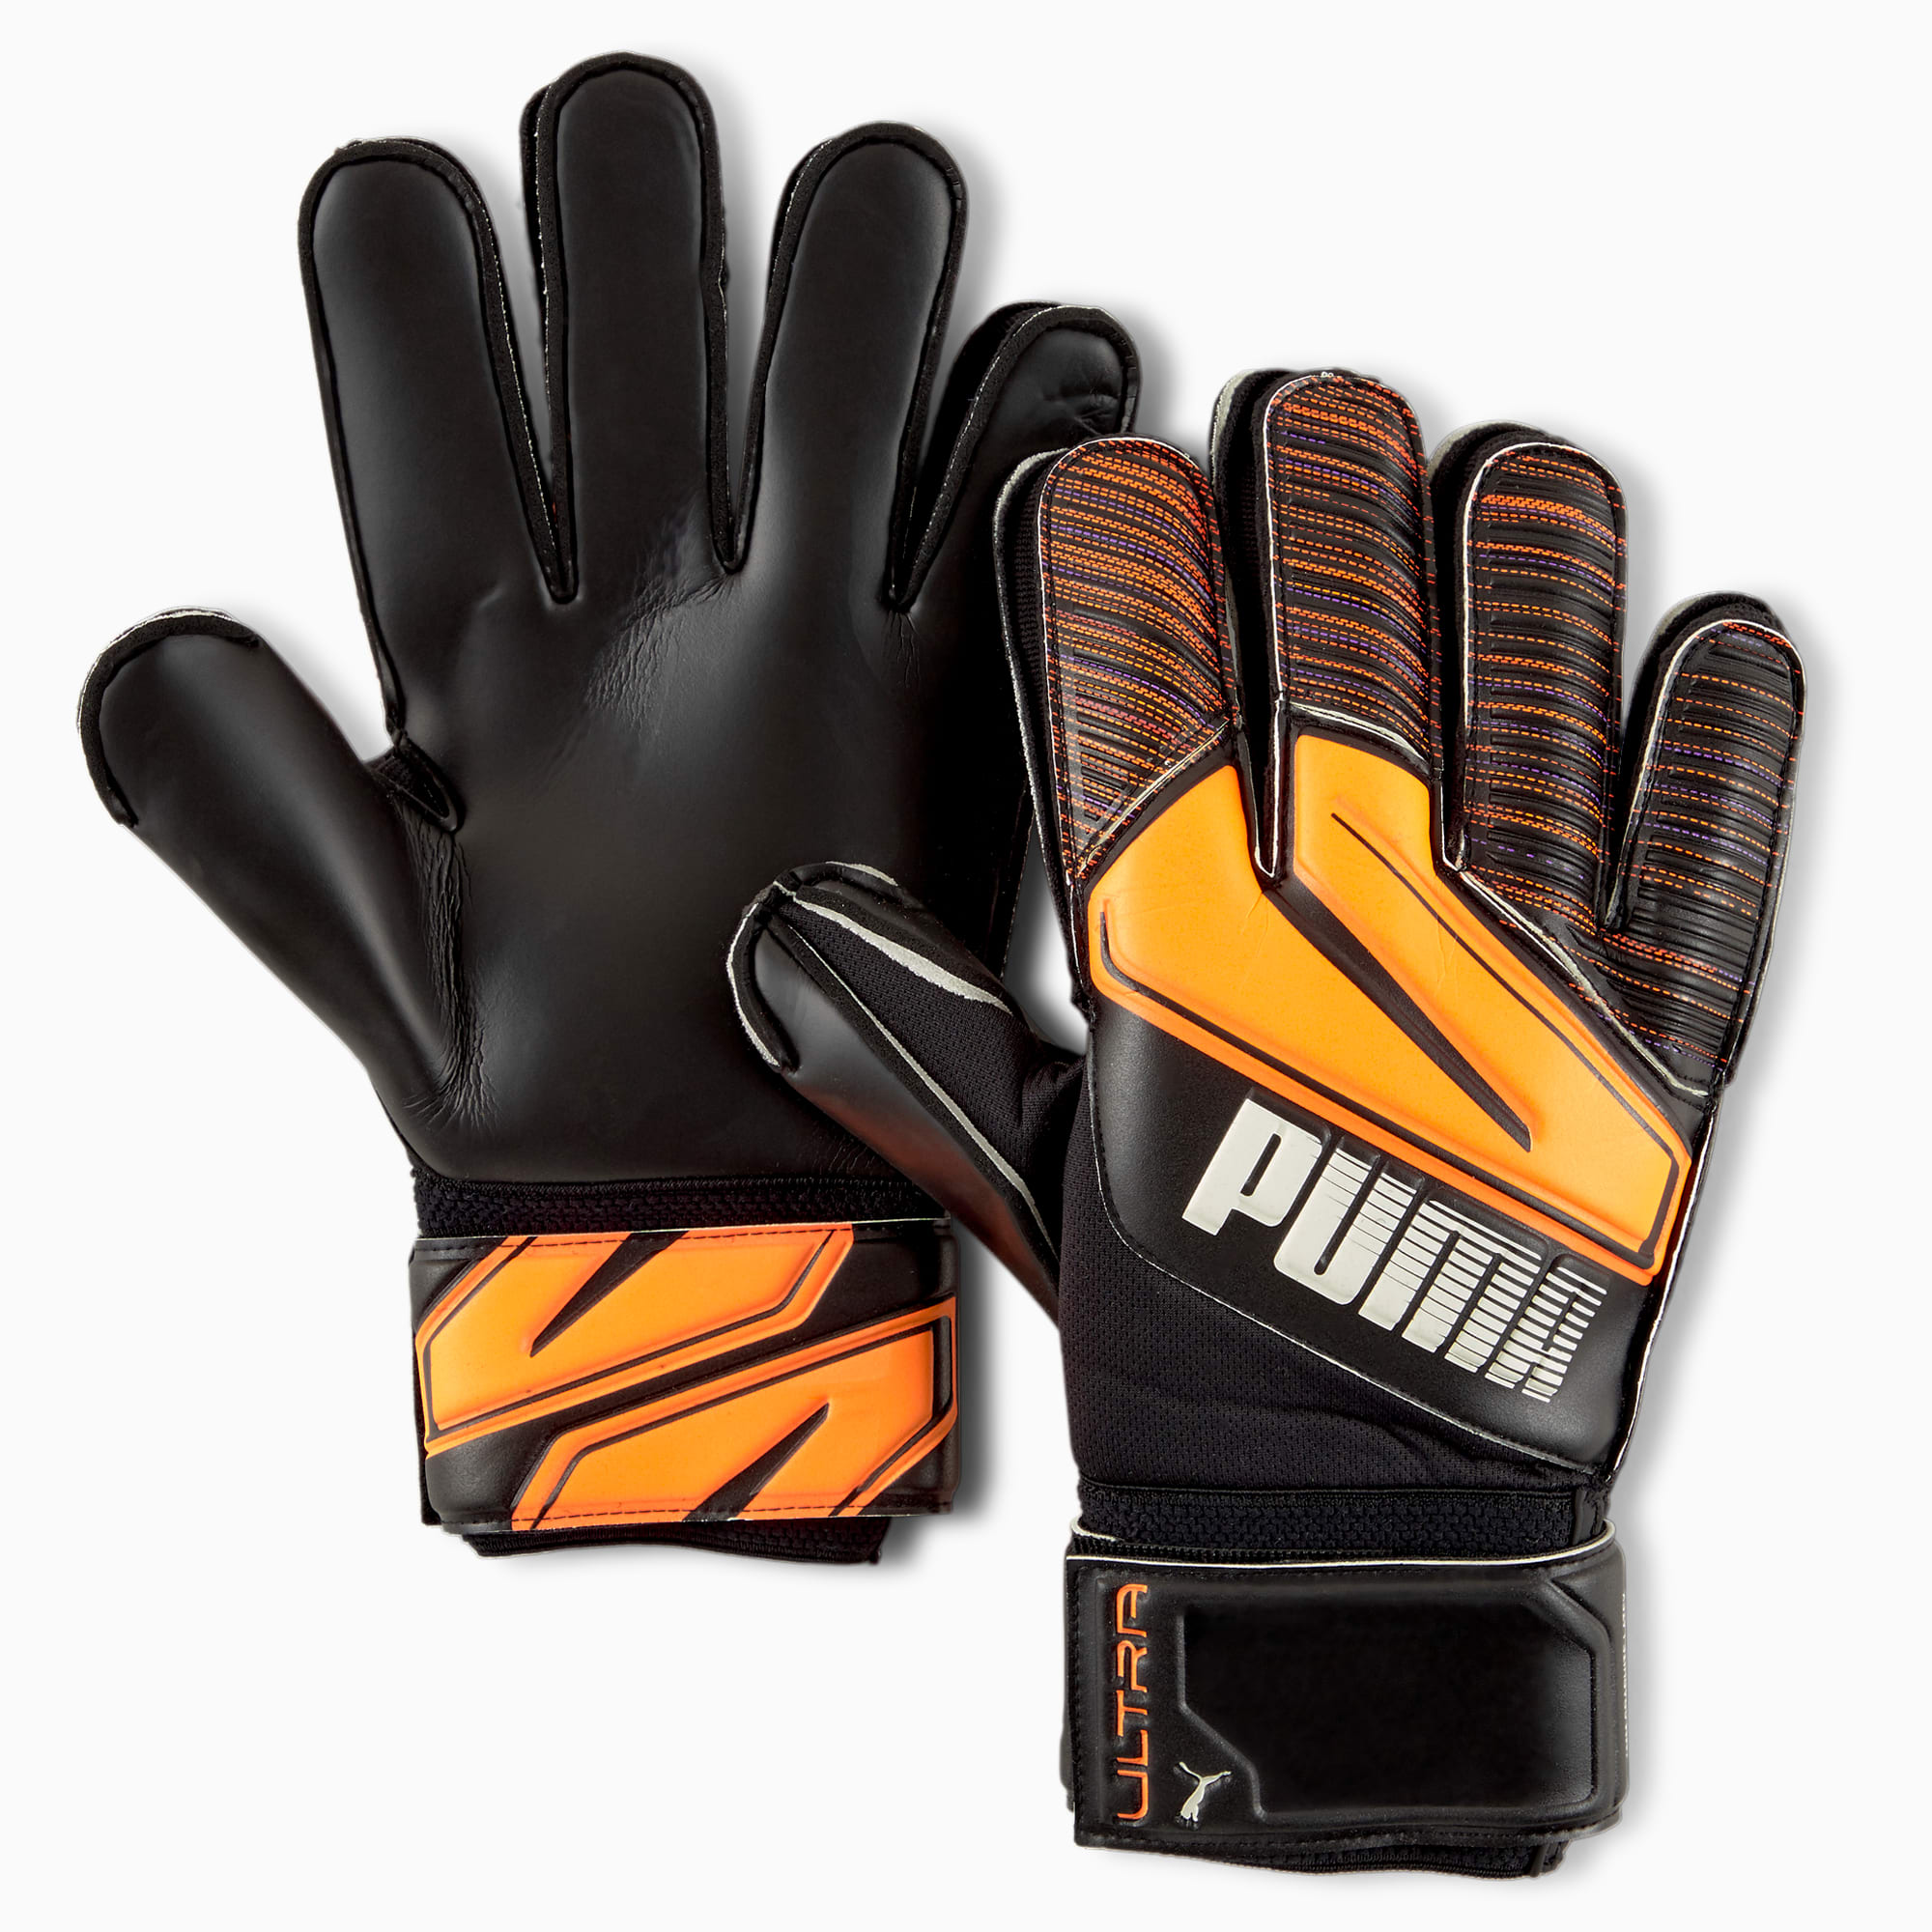 Puma公式 ウルトラ プロテクト 1 Rc サッカー ゴールキーパー グローブ メンズ Shocking Orange White Black プーマ サッカー プーマ